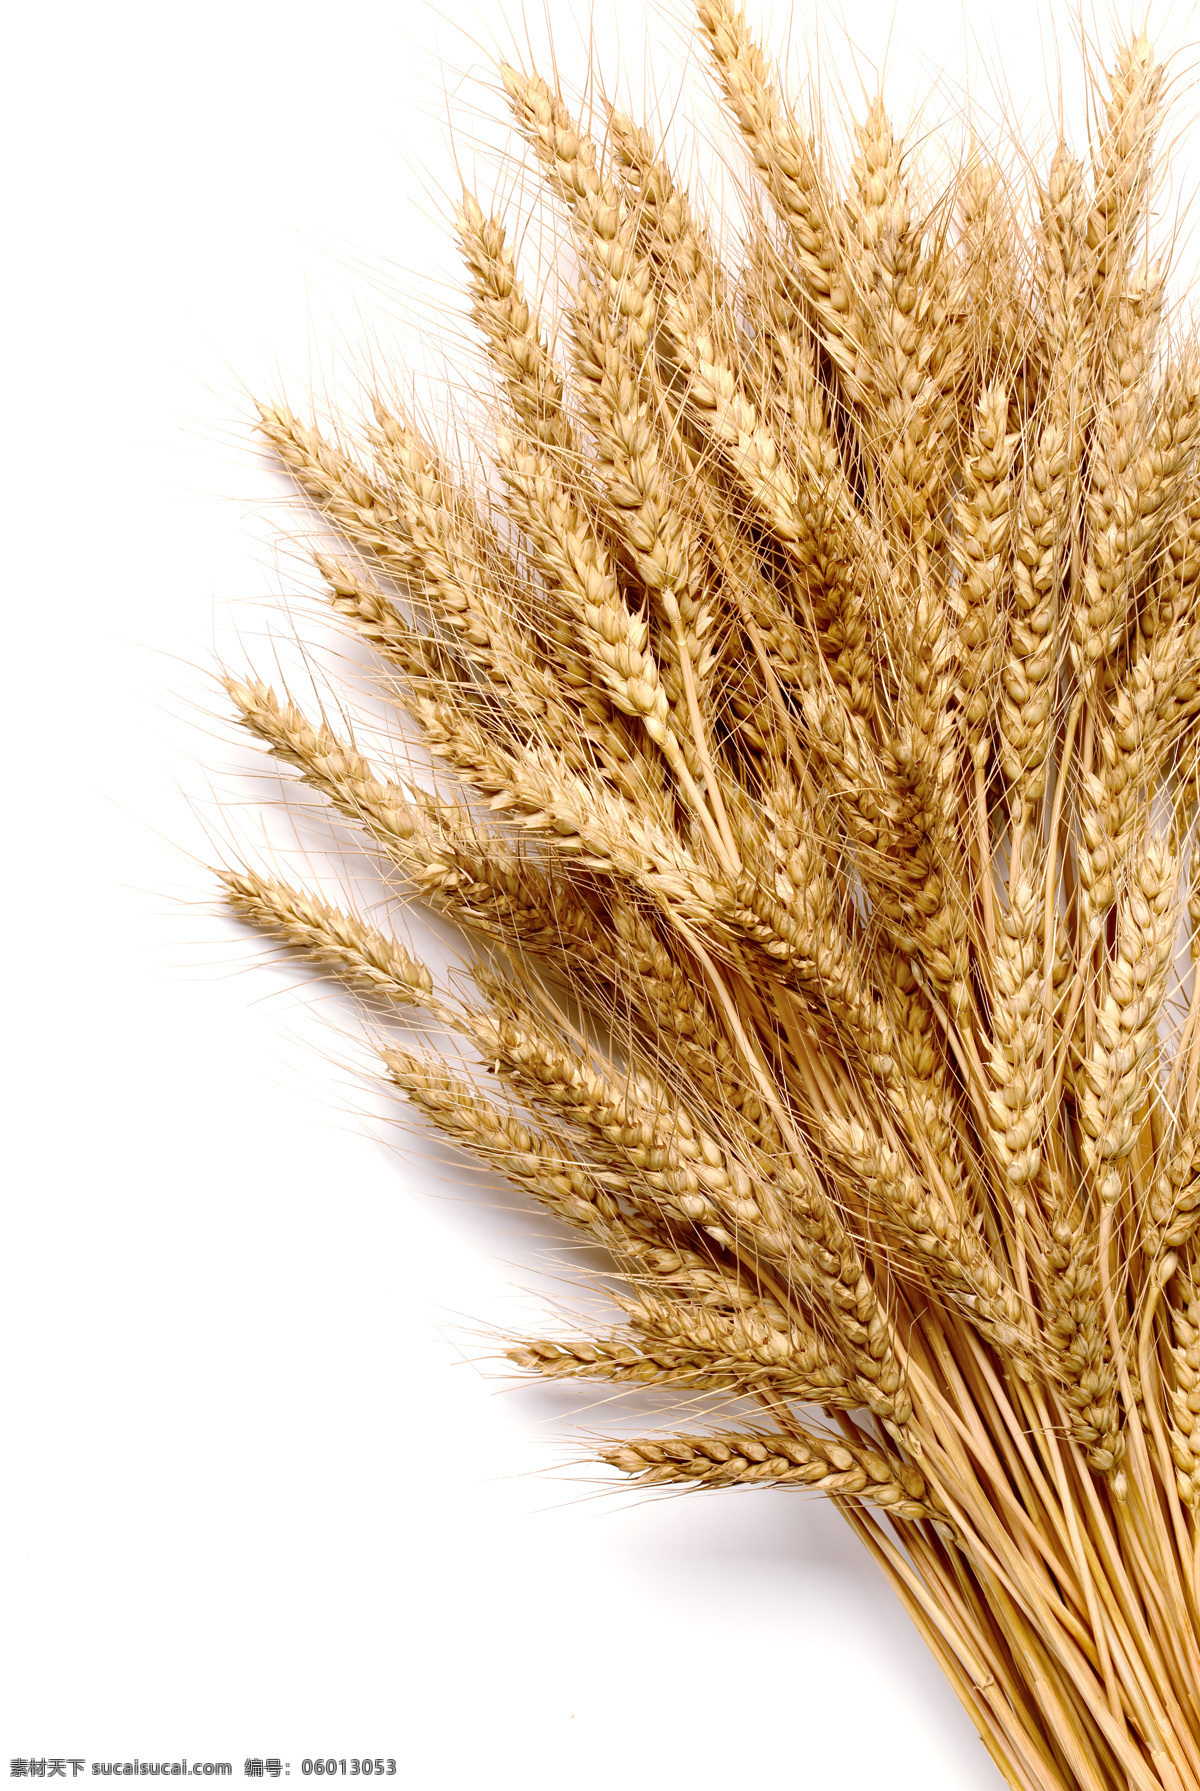 小麦 麦子 麦穗 小麦图 农业生产 现代科技